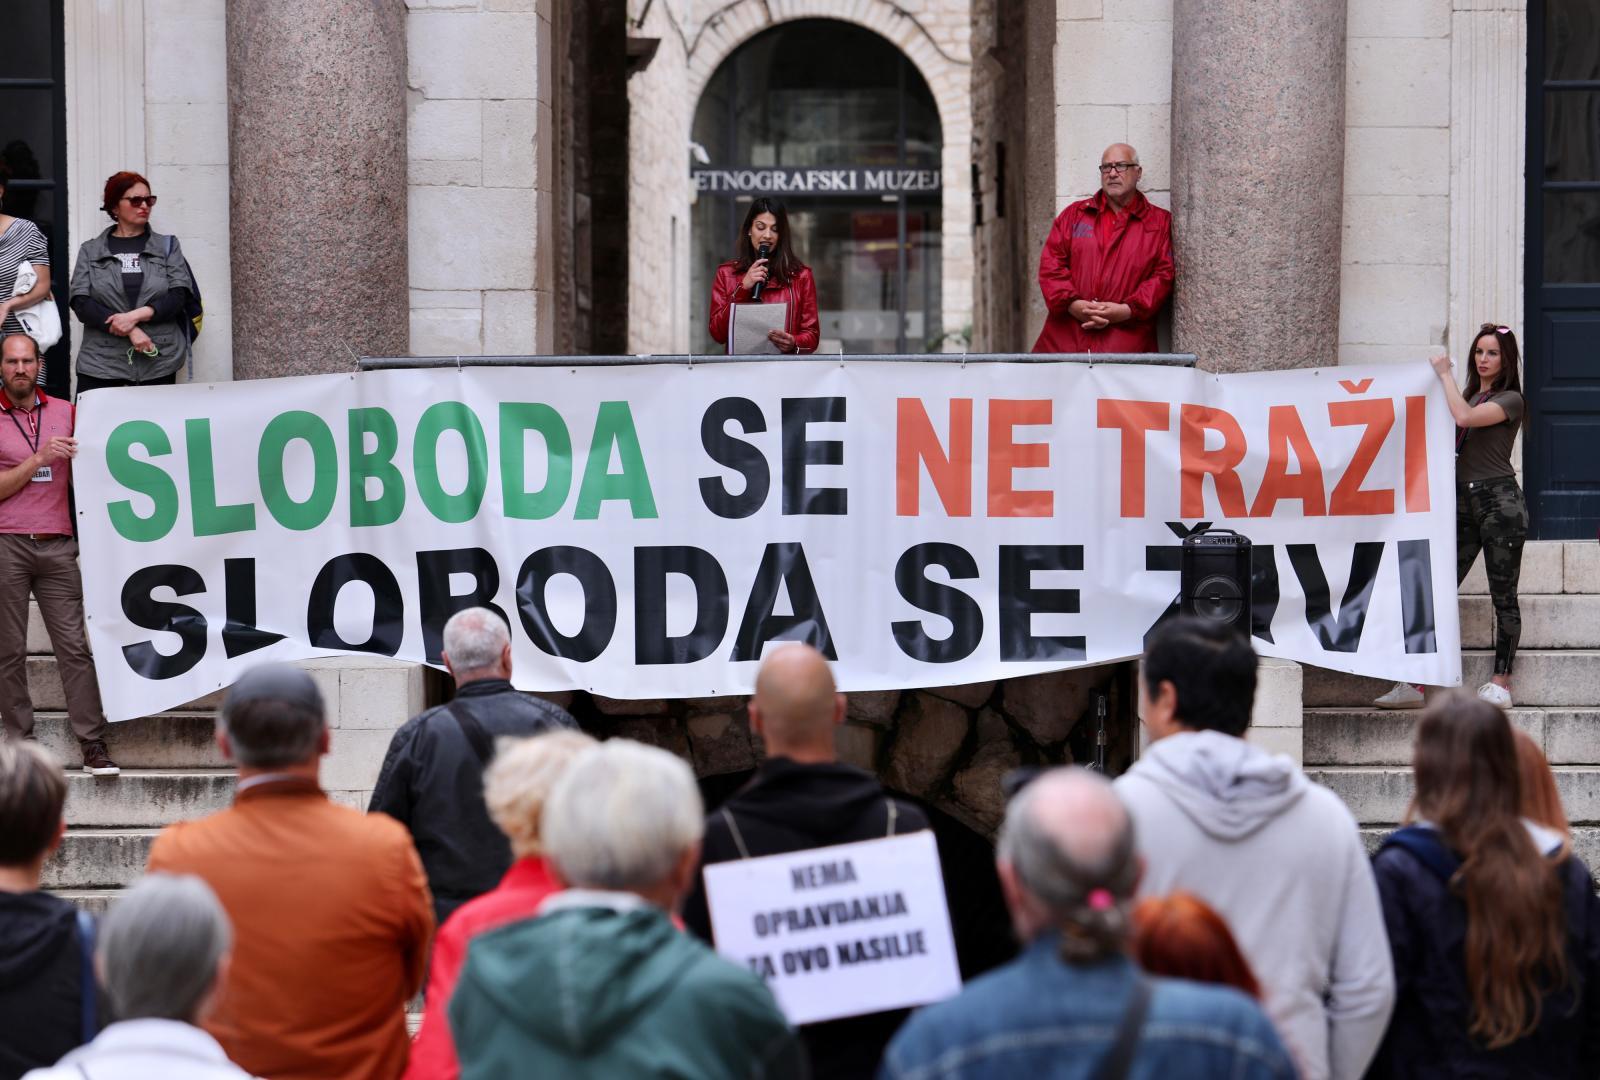 15.05.2021., Split - Na Peristilu odrzan Svjetski prosvjed za slobodu.
Photo: Ivo Cagalj/PIXSELL